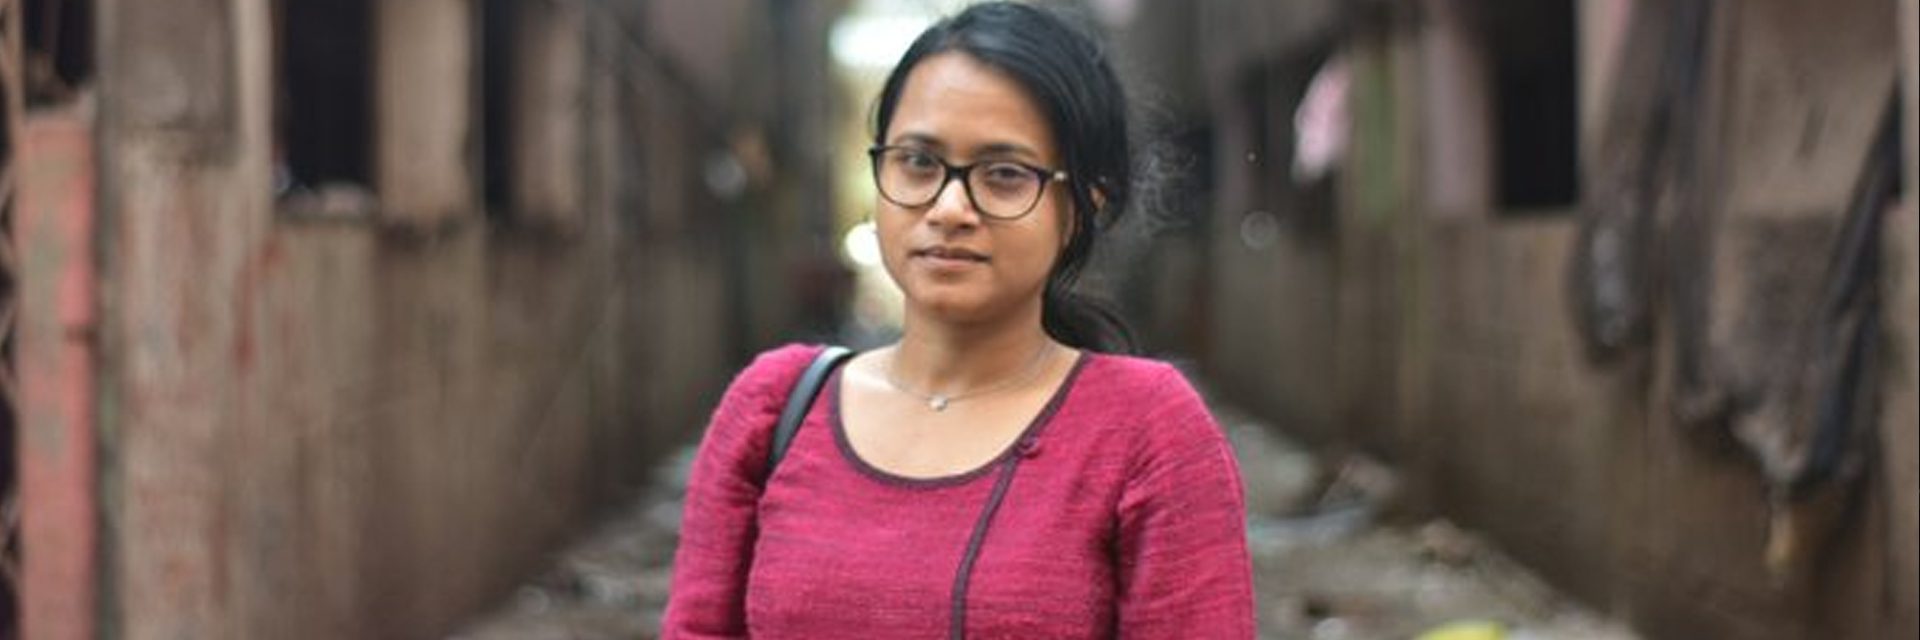 ဒီဇိုင်းဖြင့်မြို့များ- Cambridge မှ Dr Ronita Bardhan သည် ဝင်ငွေနည်းအိမ်ယာအဖြစ် ရေရှည်တည်တံ့မှုကို ယူဆောင်ပေးသည်